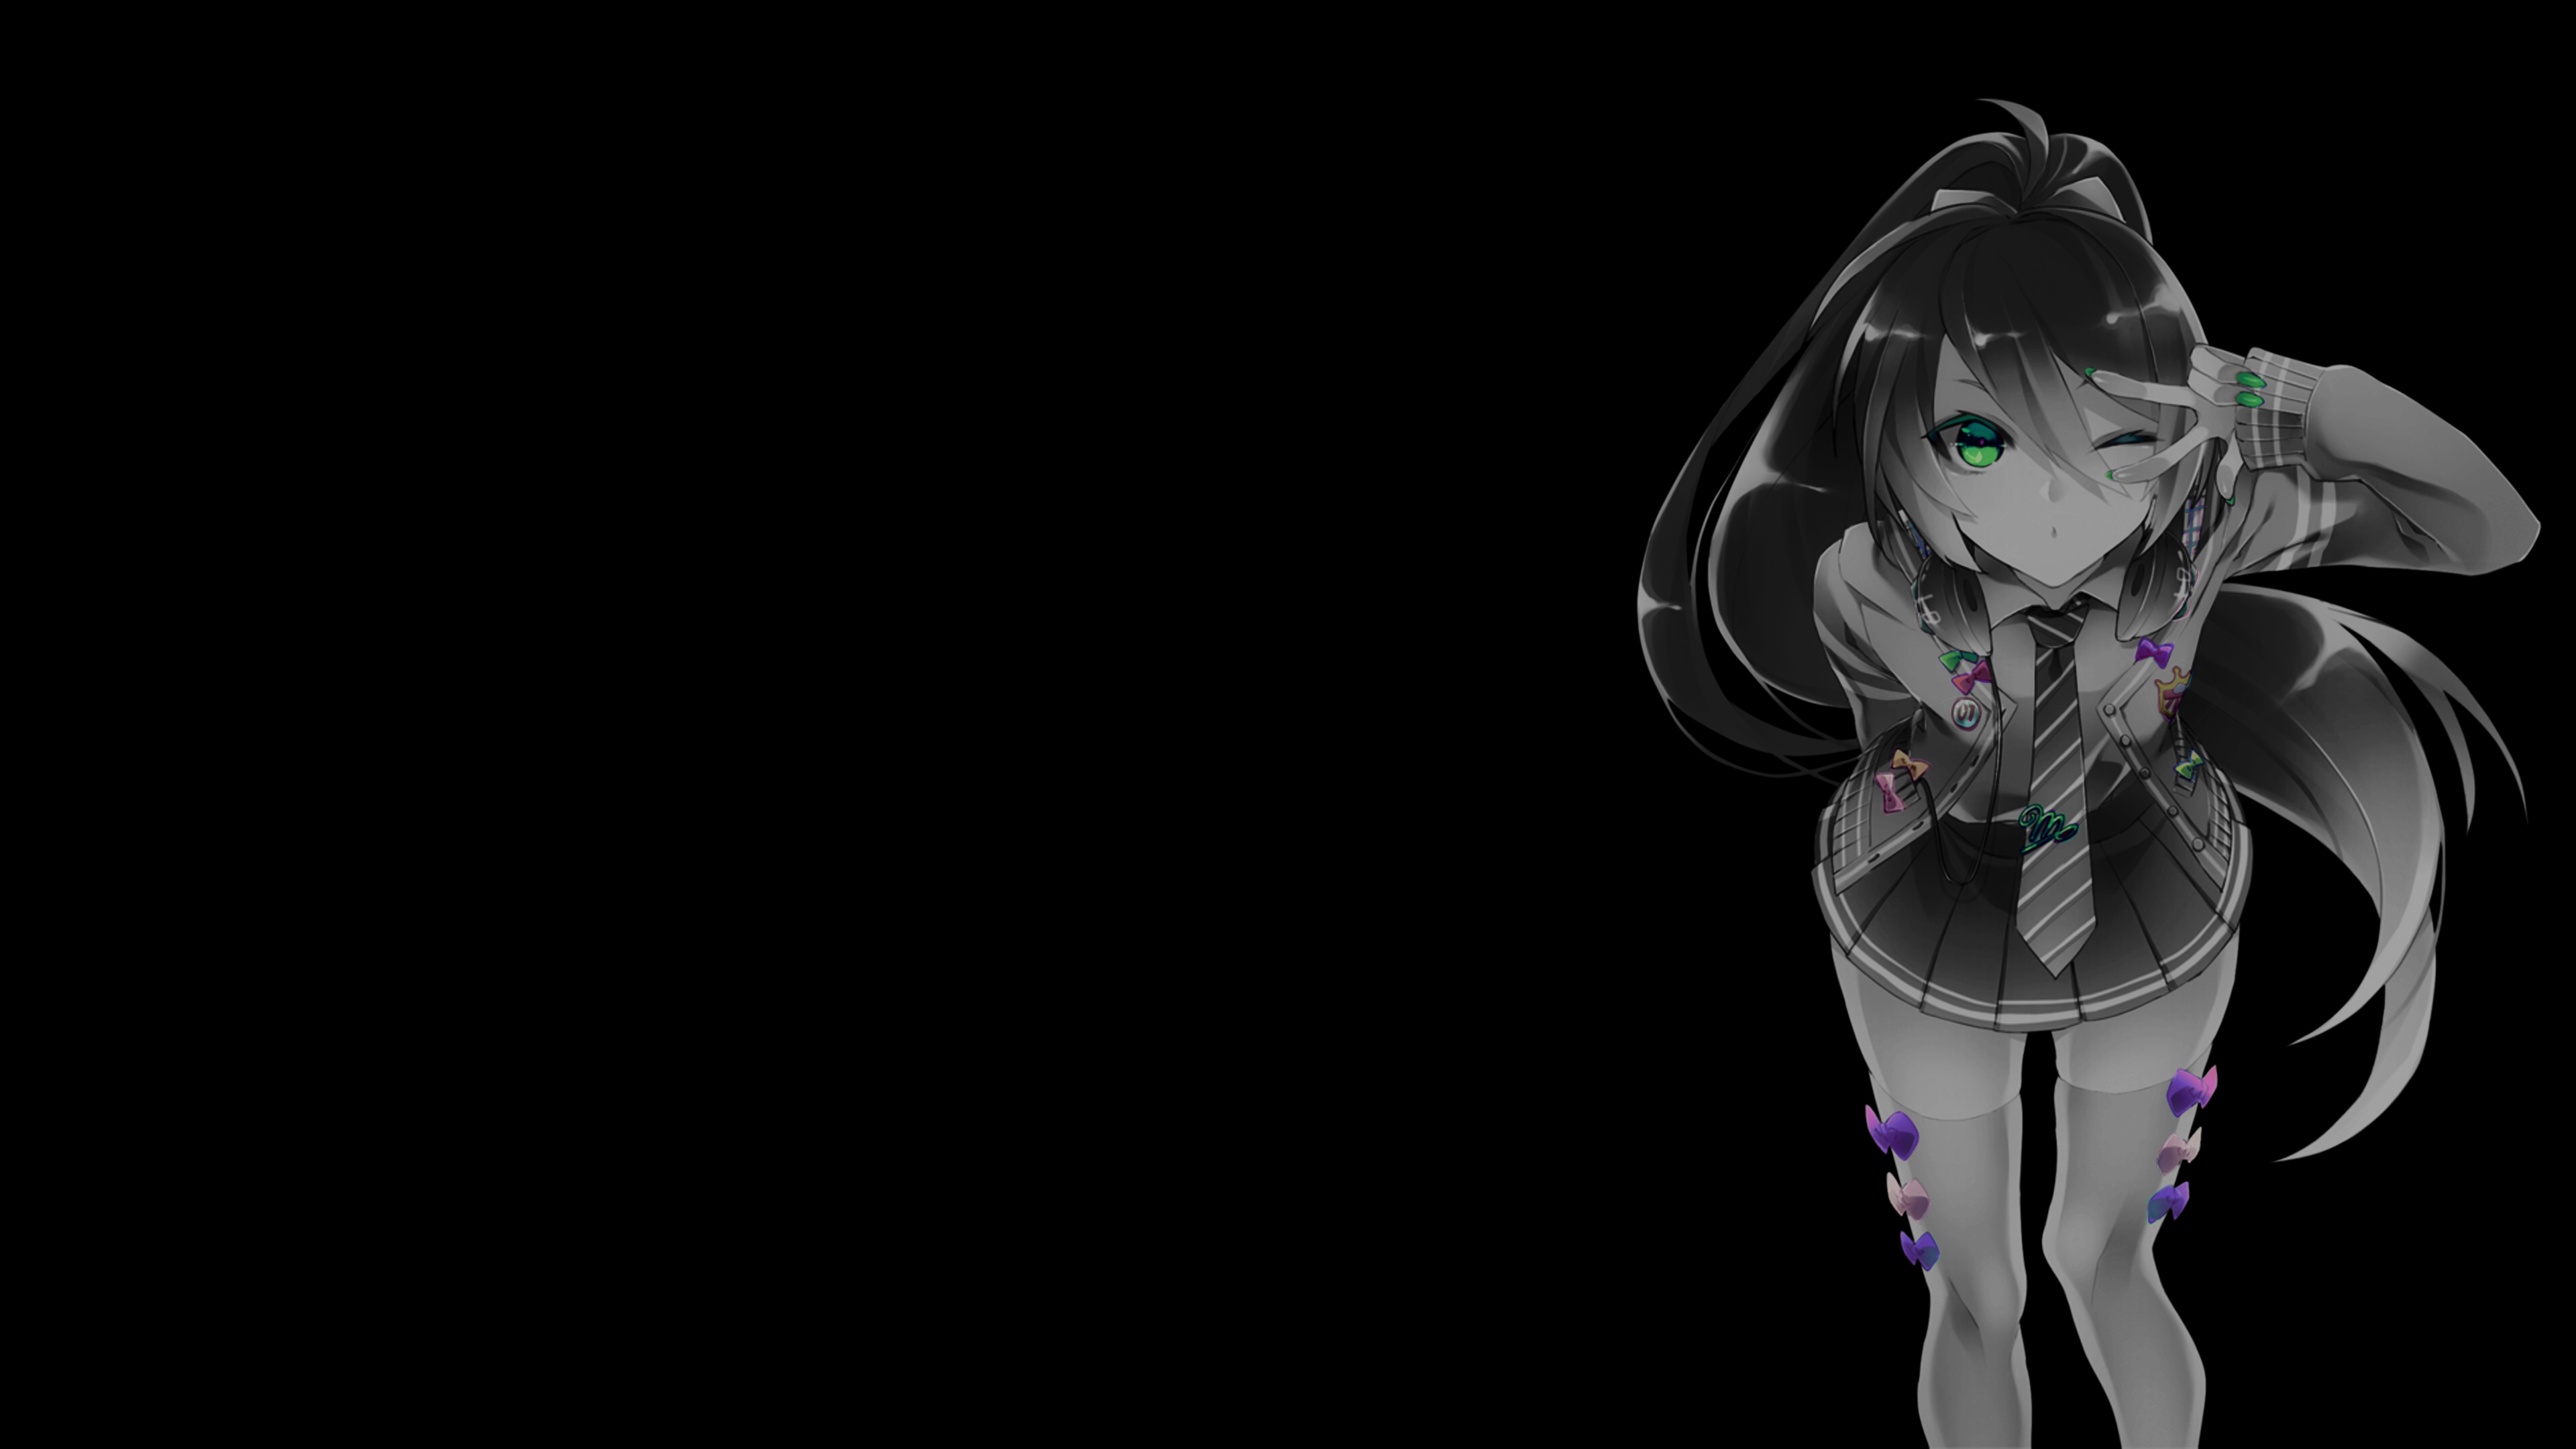 Anime 3840x2160 selective coloring anime girls black background dark background simple background